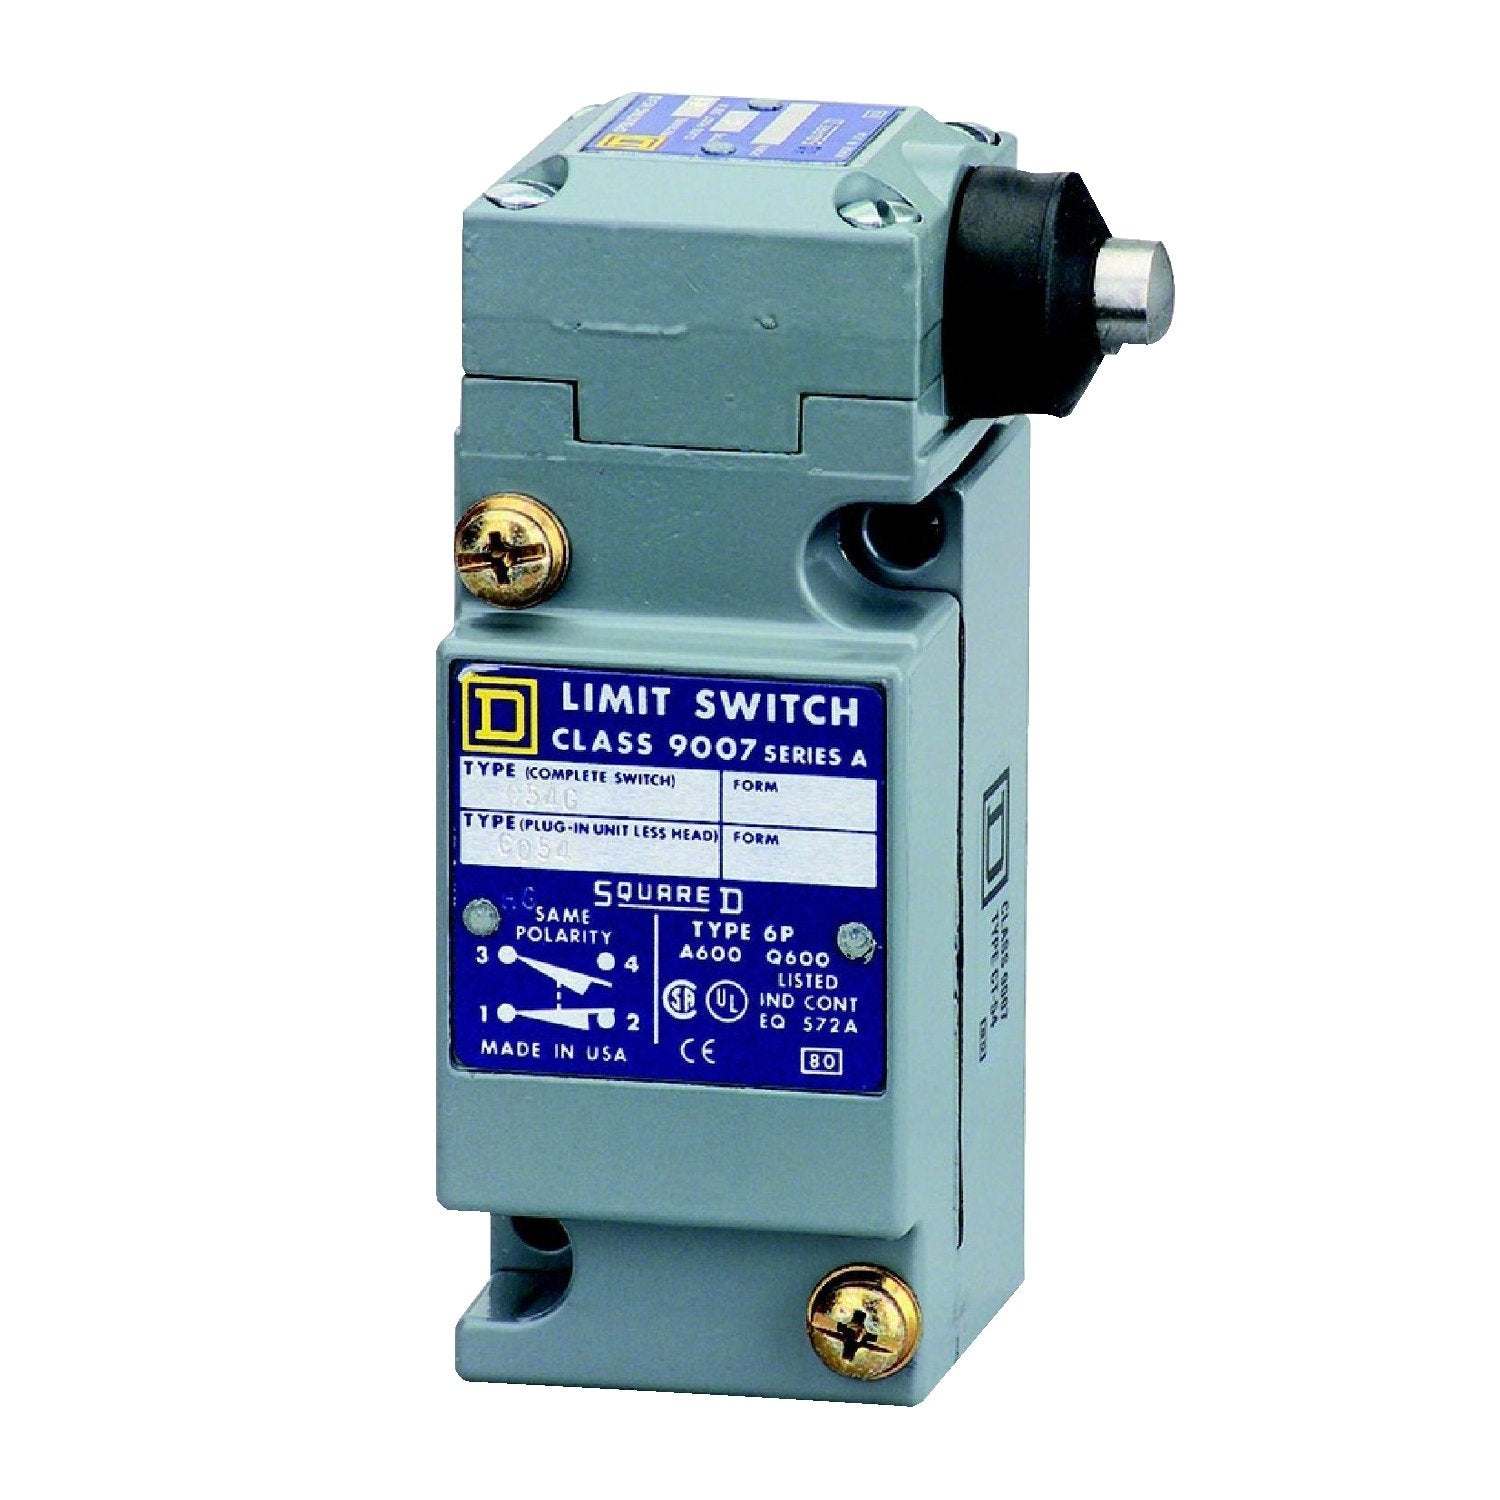 9007C54G - Square D 10 Amp 600 Volt Electric Limit Switch